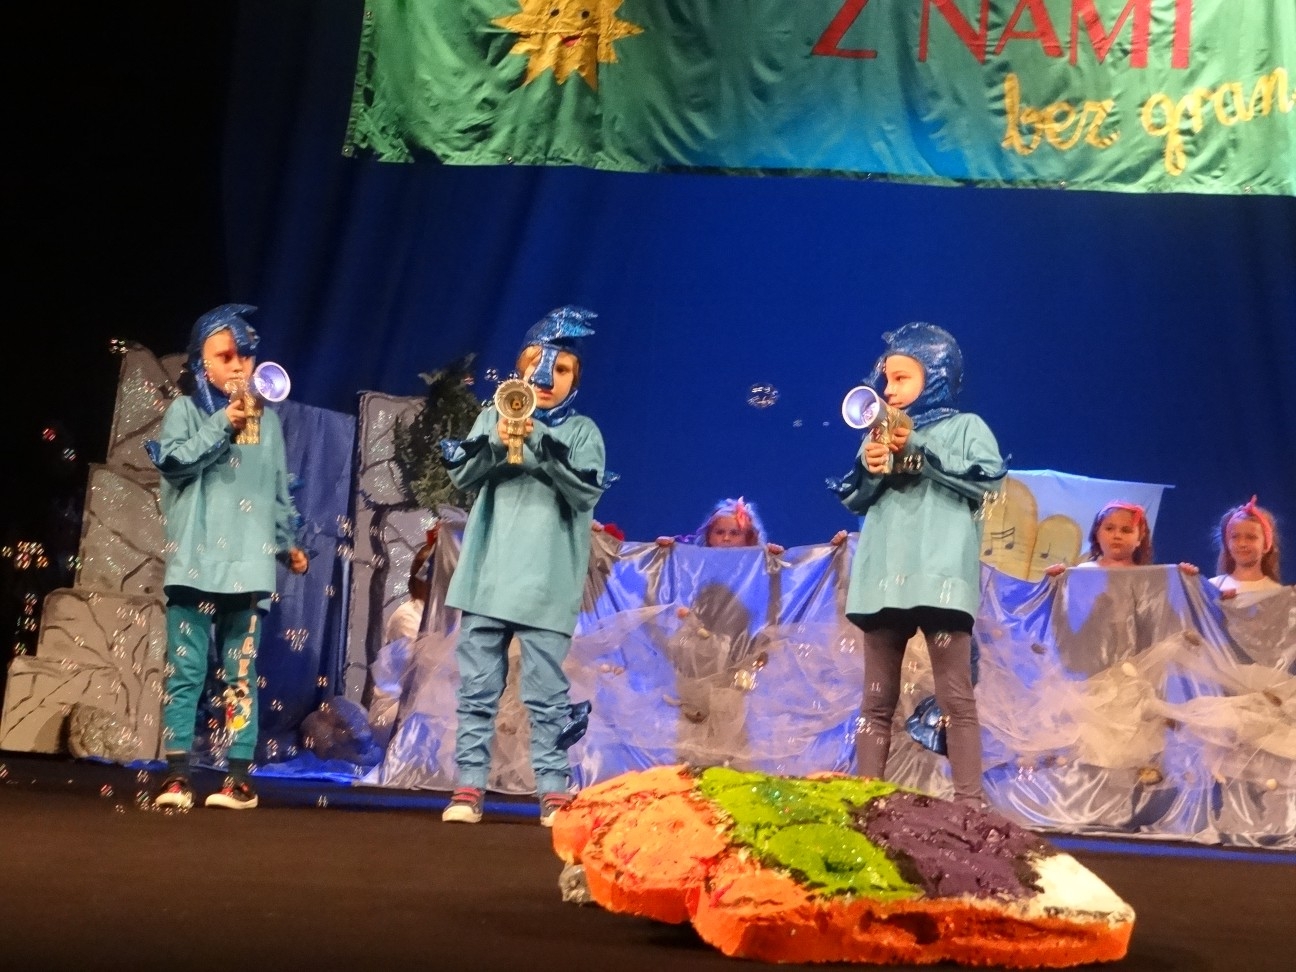 Podwodny świat Muzykolandii” – Przedszkole Chatka Puchatka